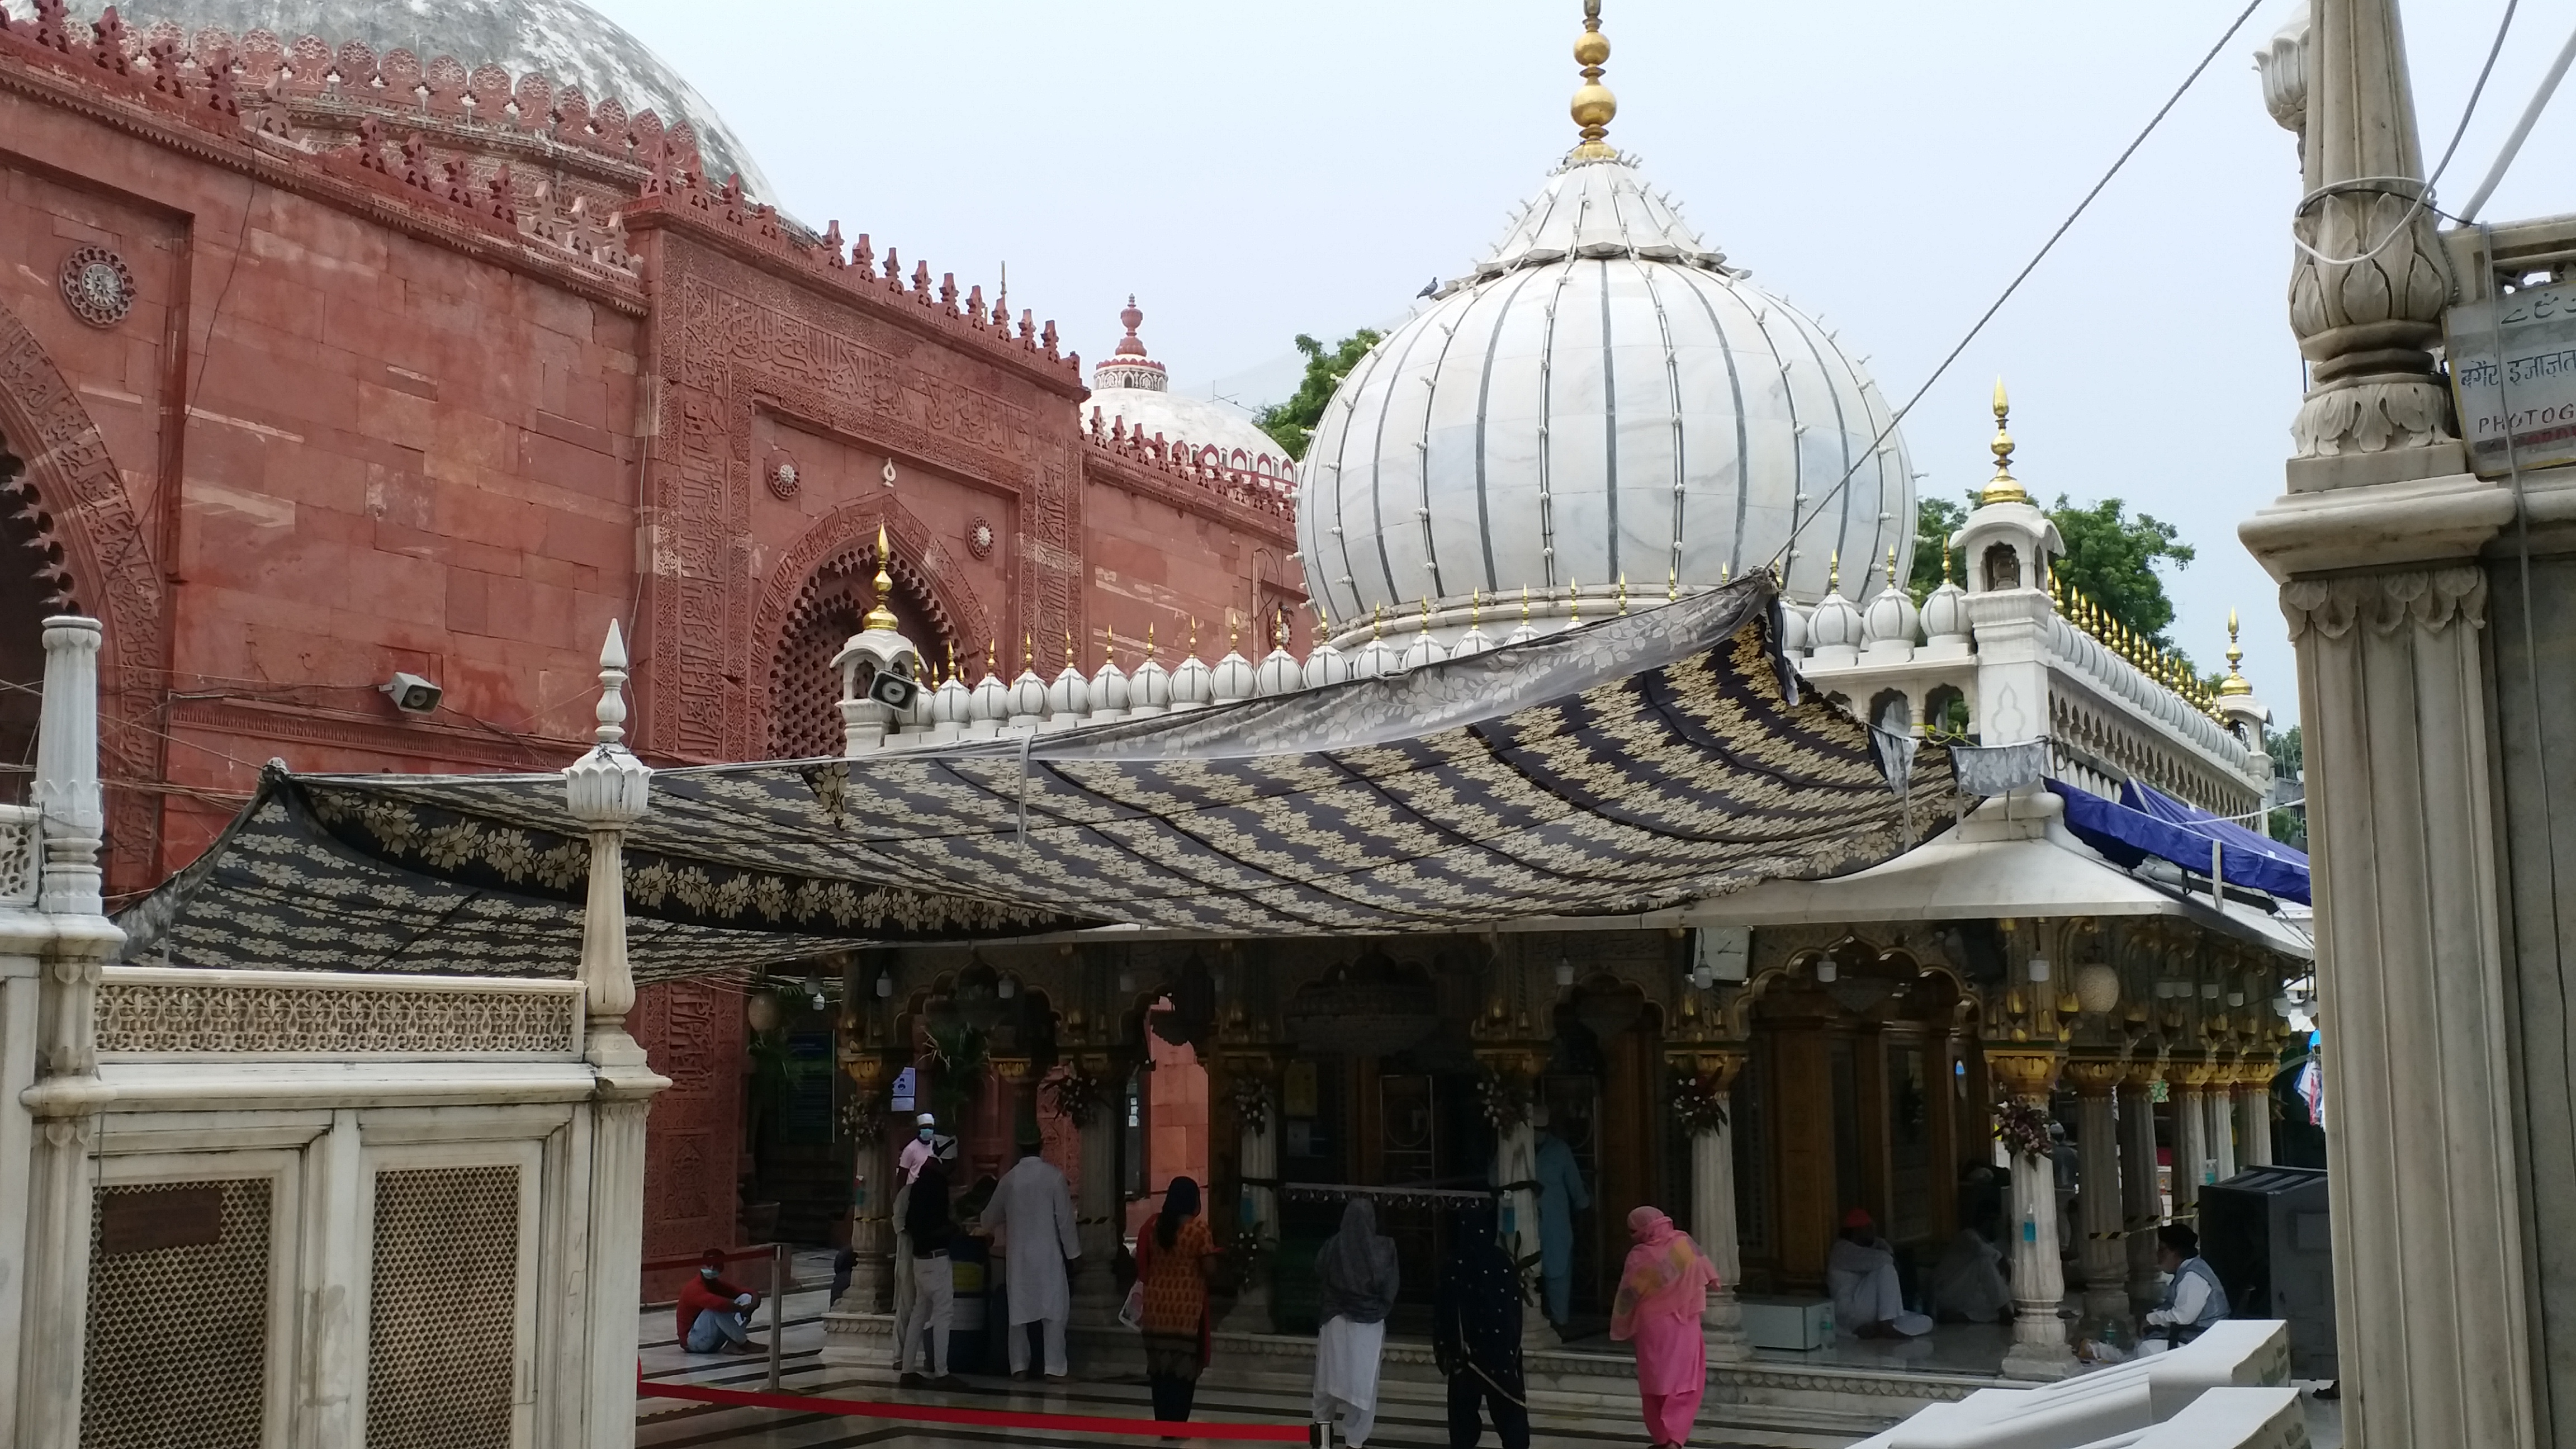 the shrine of hazrat nizamuddin was opened for the pilgrims in delhi